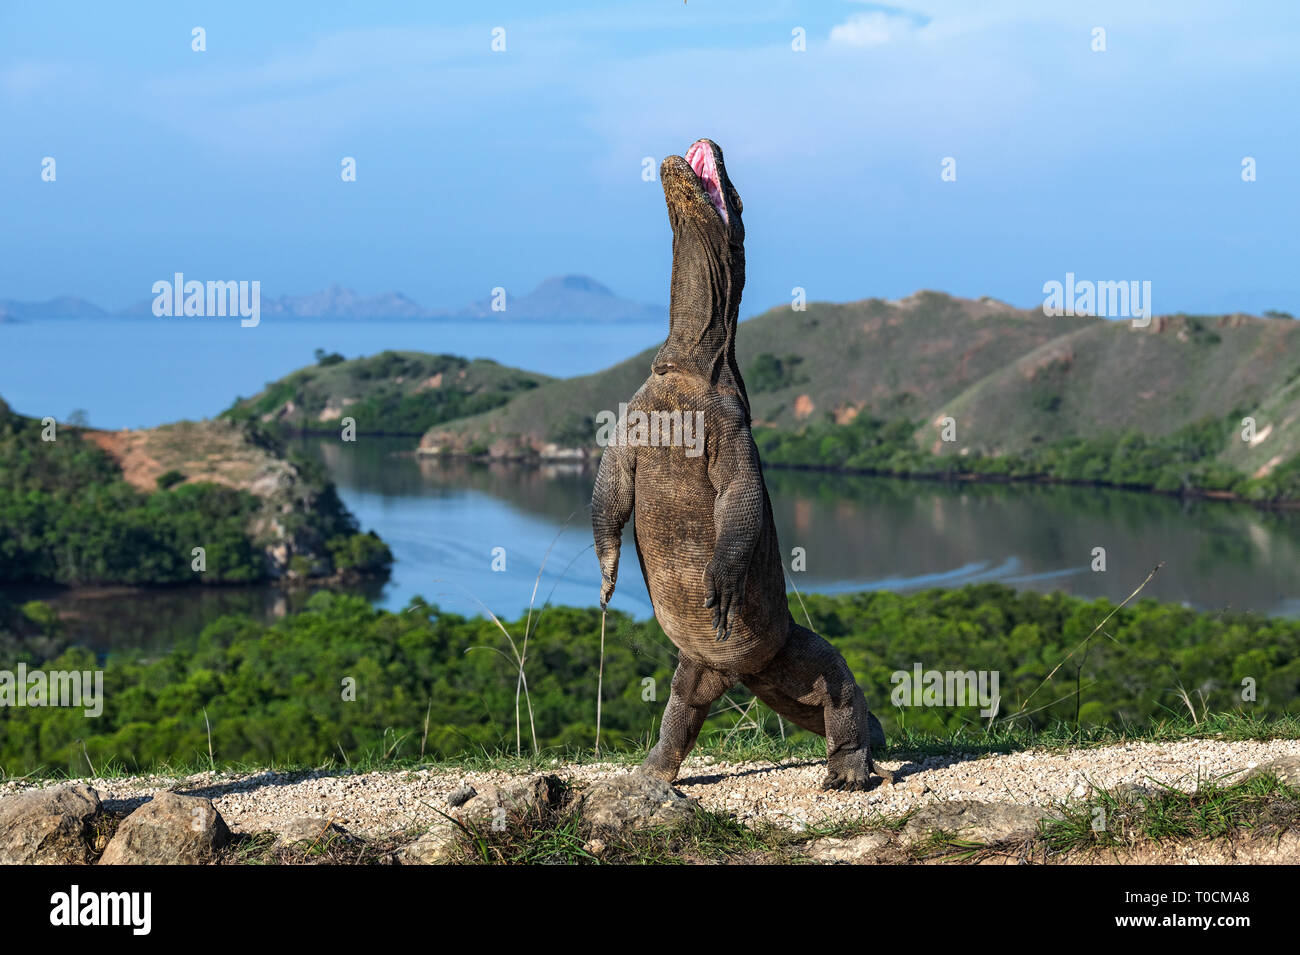 Il drago di Komodo si erge sulle zampe posteriori. Nome scientifico: Varanus komodoensis. Più grande lucertola vivente nel mondo. Isola di Rinca. Indonesia. Foto Stock